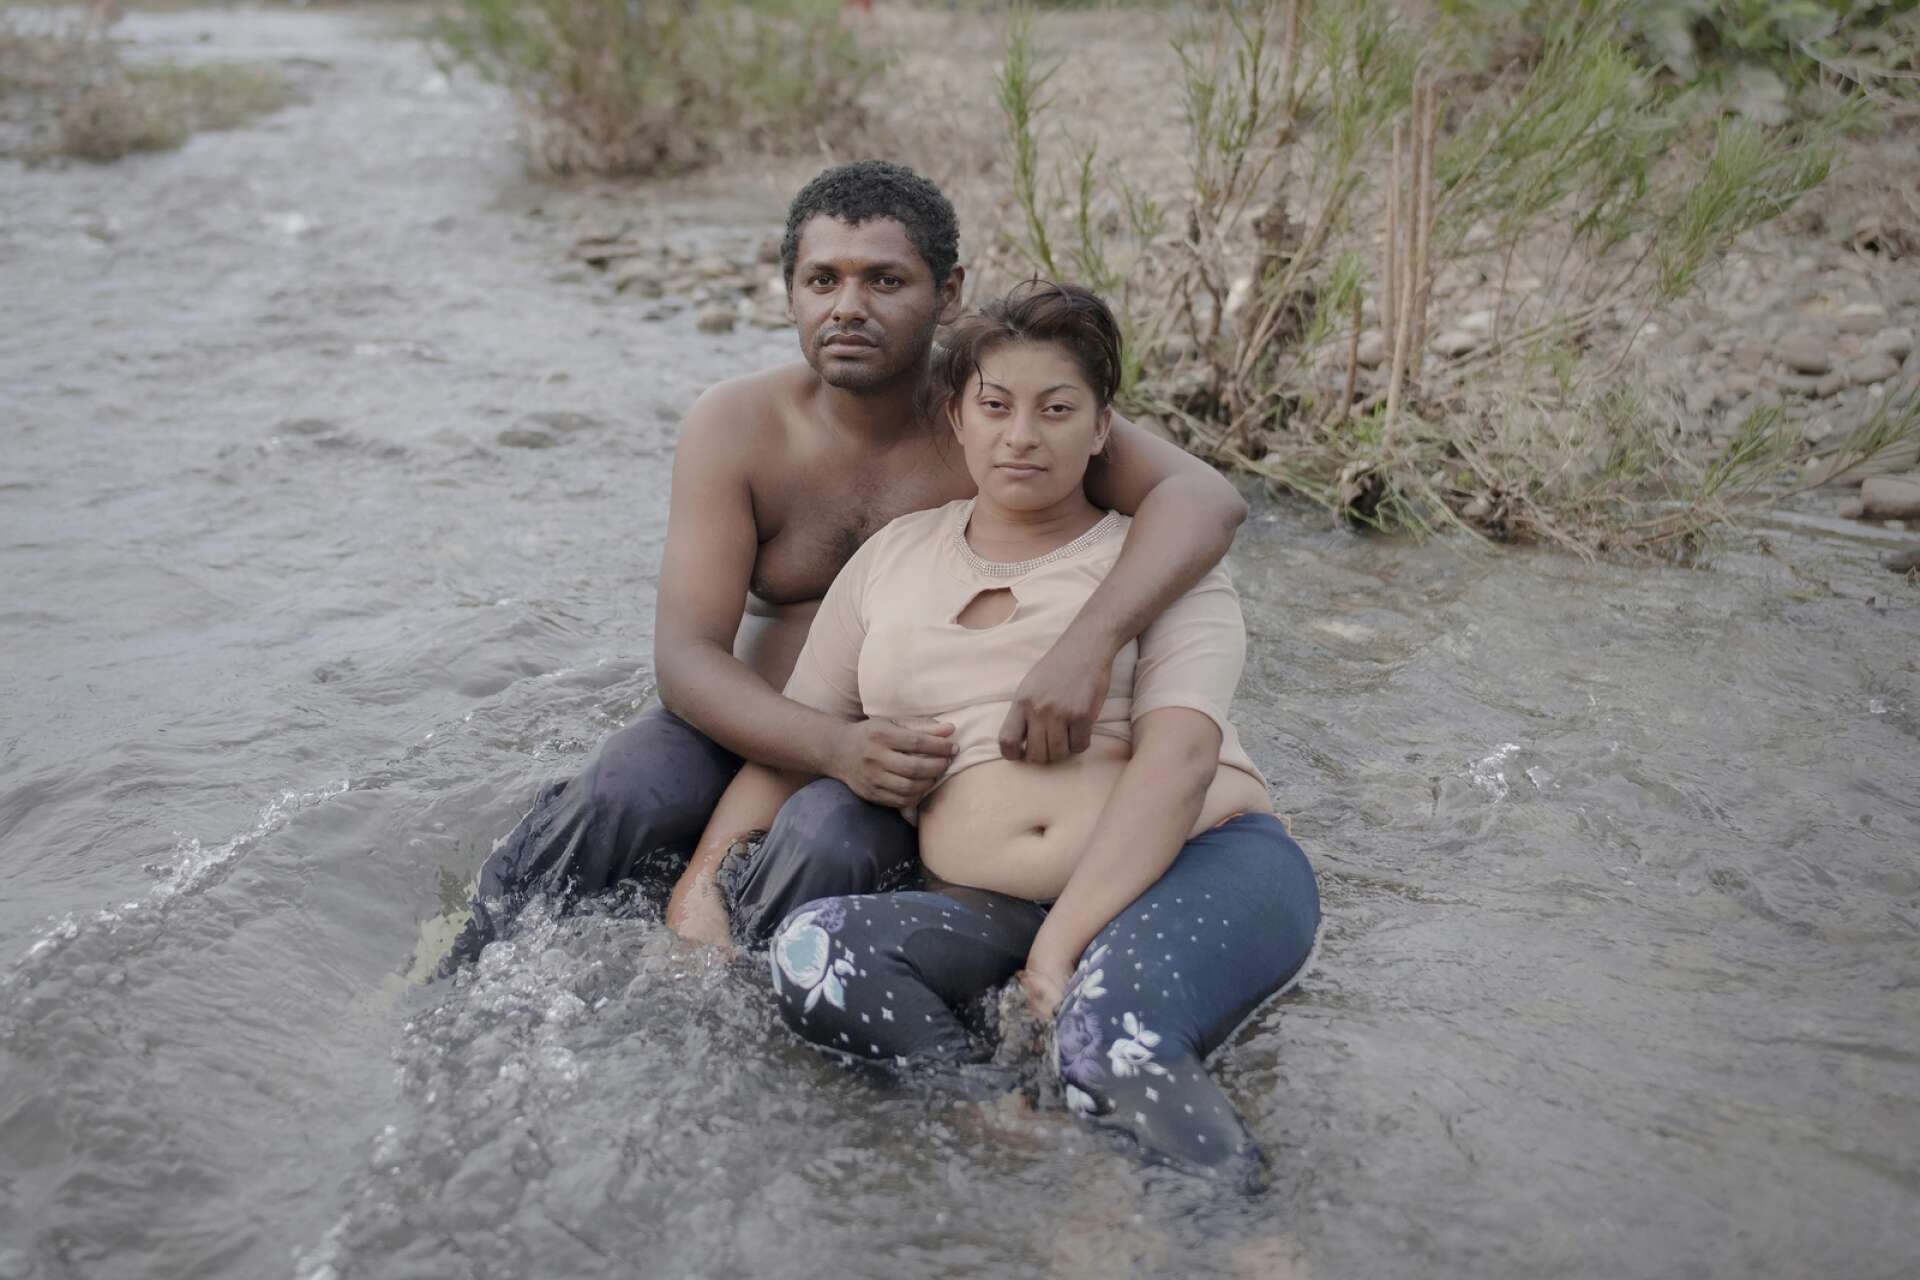 Två av människorna som Pieter ten Hoopen mötte är paret Christian och Maritza, som satt trötta och utmattade mitt i floden utanför Niltepec i centrala Mexiko och svalkar sig efter en hel dag i den heta solen. Martiza är höggravid.